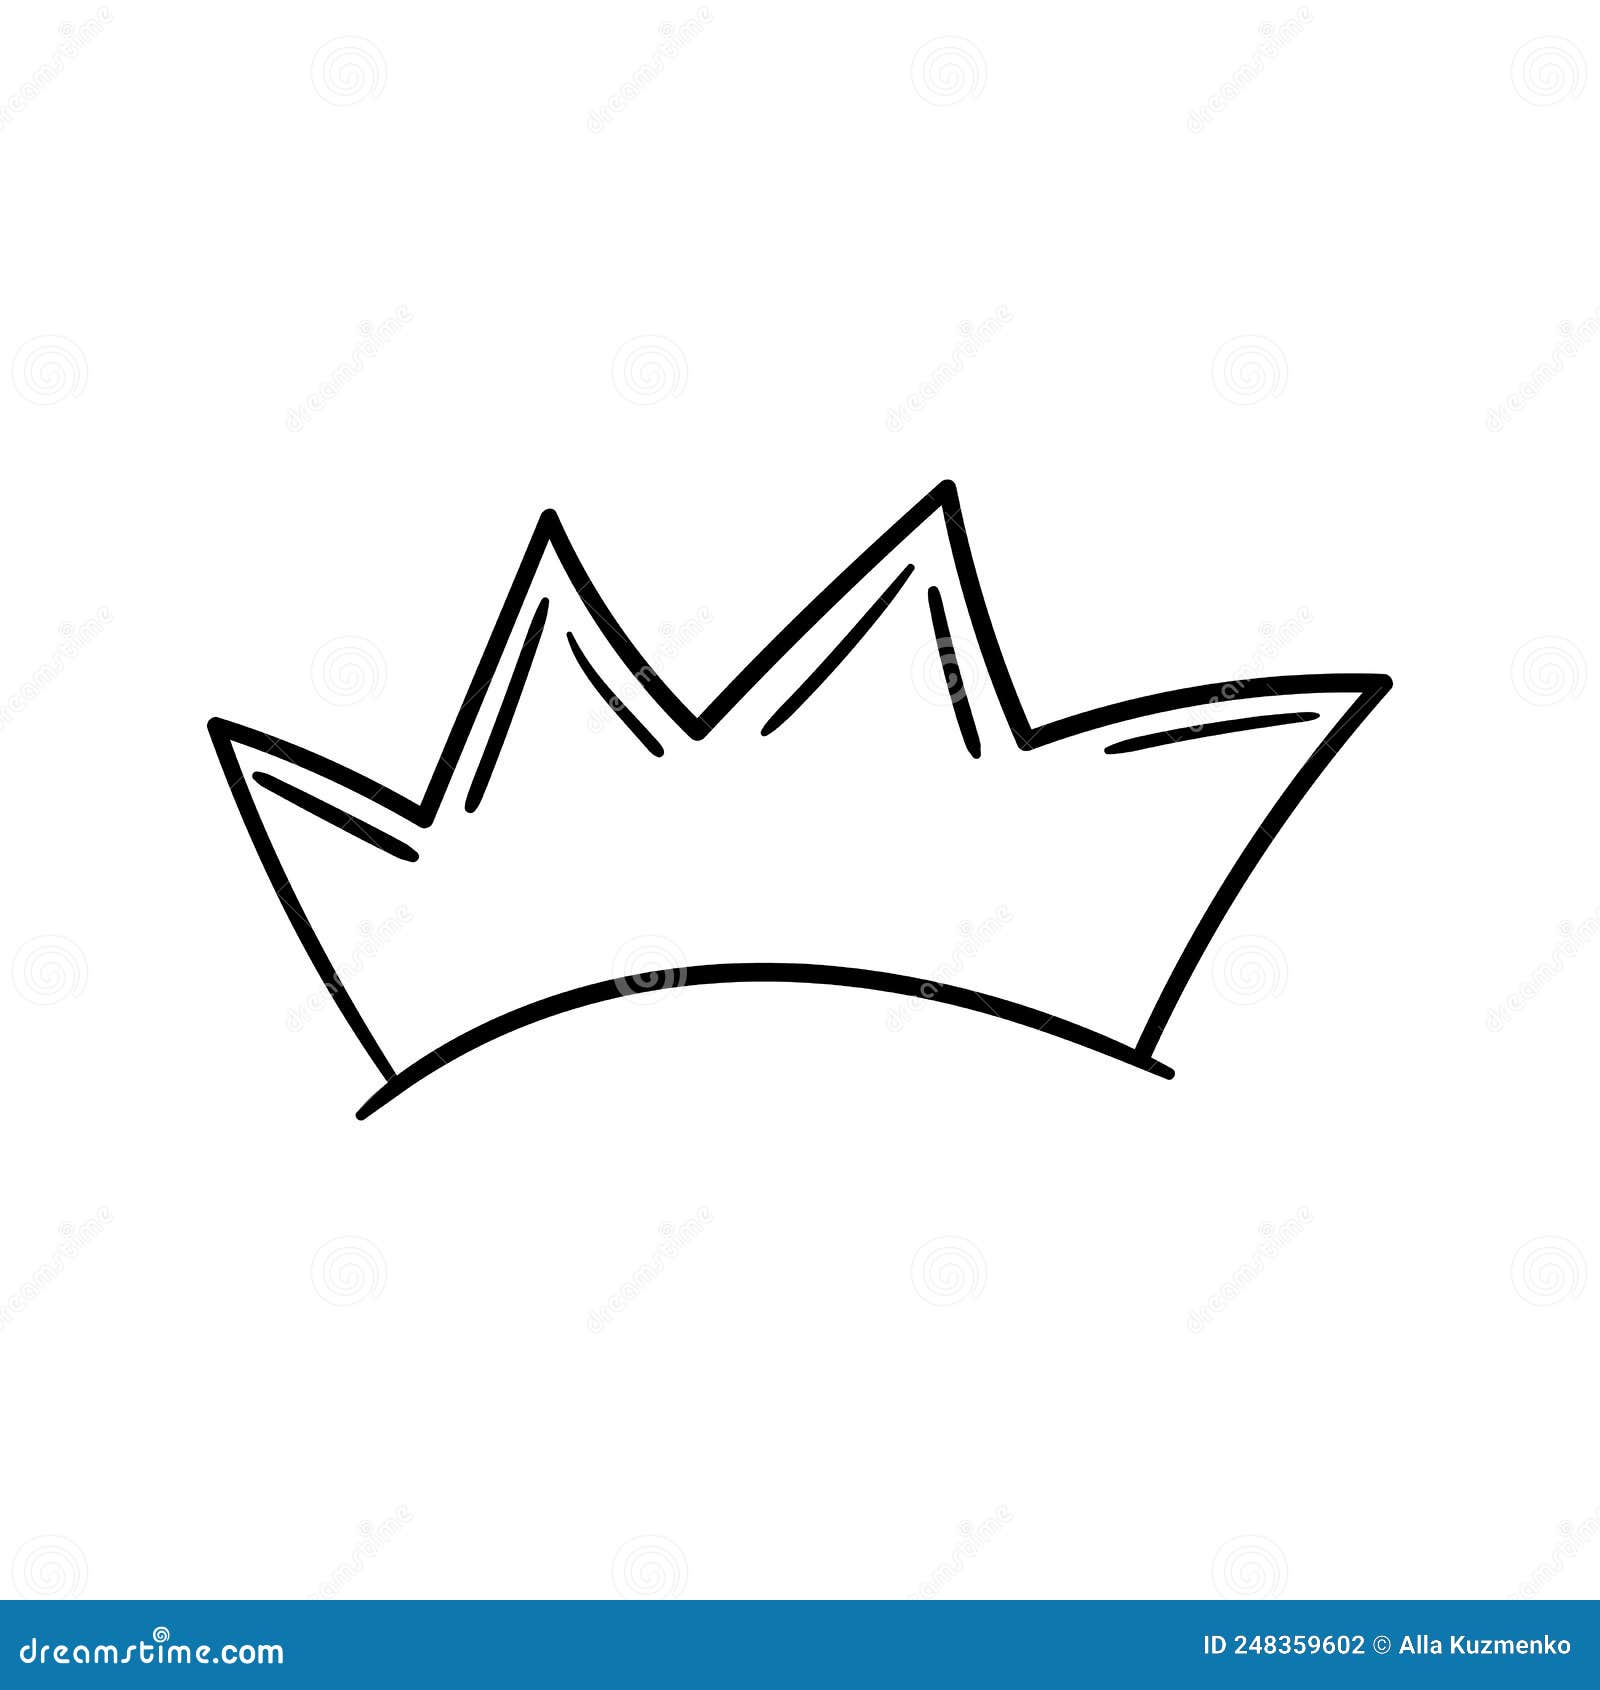 Crown Logo Graffiti Icon. Black Icon Isolated on White Background ...